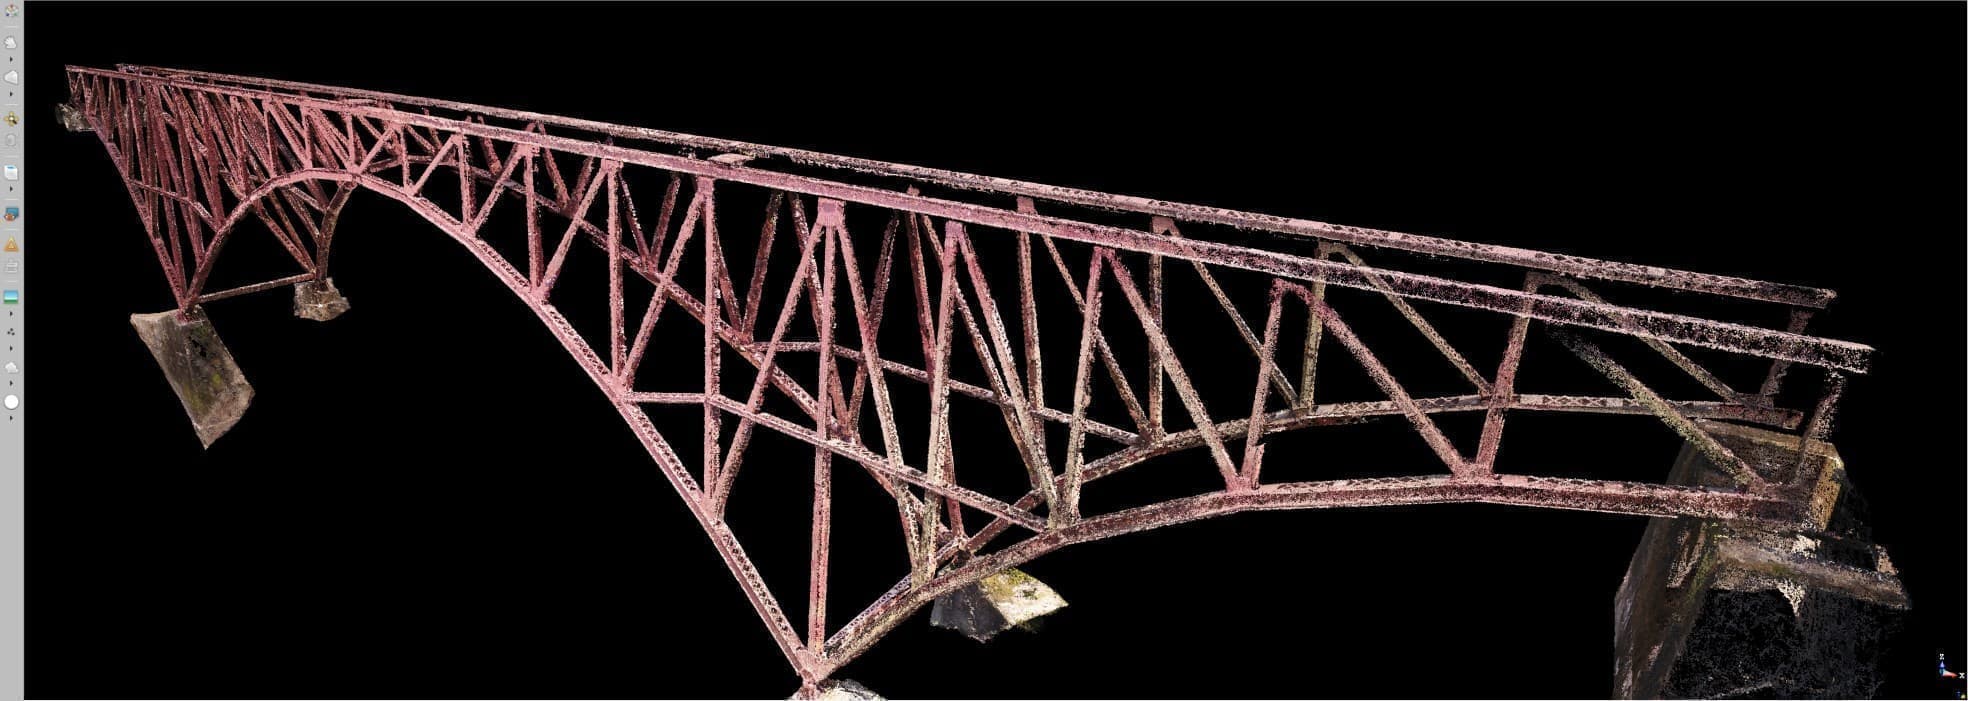 ドローンの写真測量の手法を用いて橋梁の現況確認調査にご活用いただきました